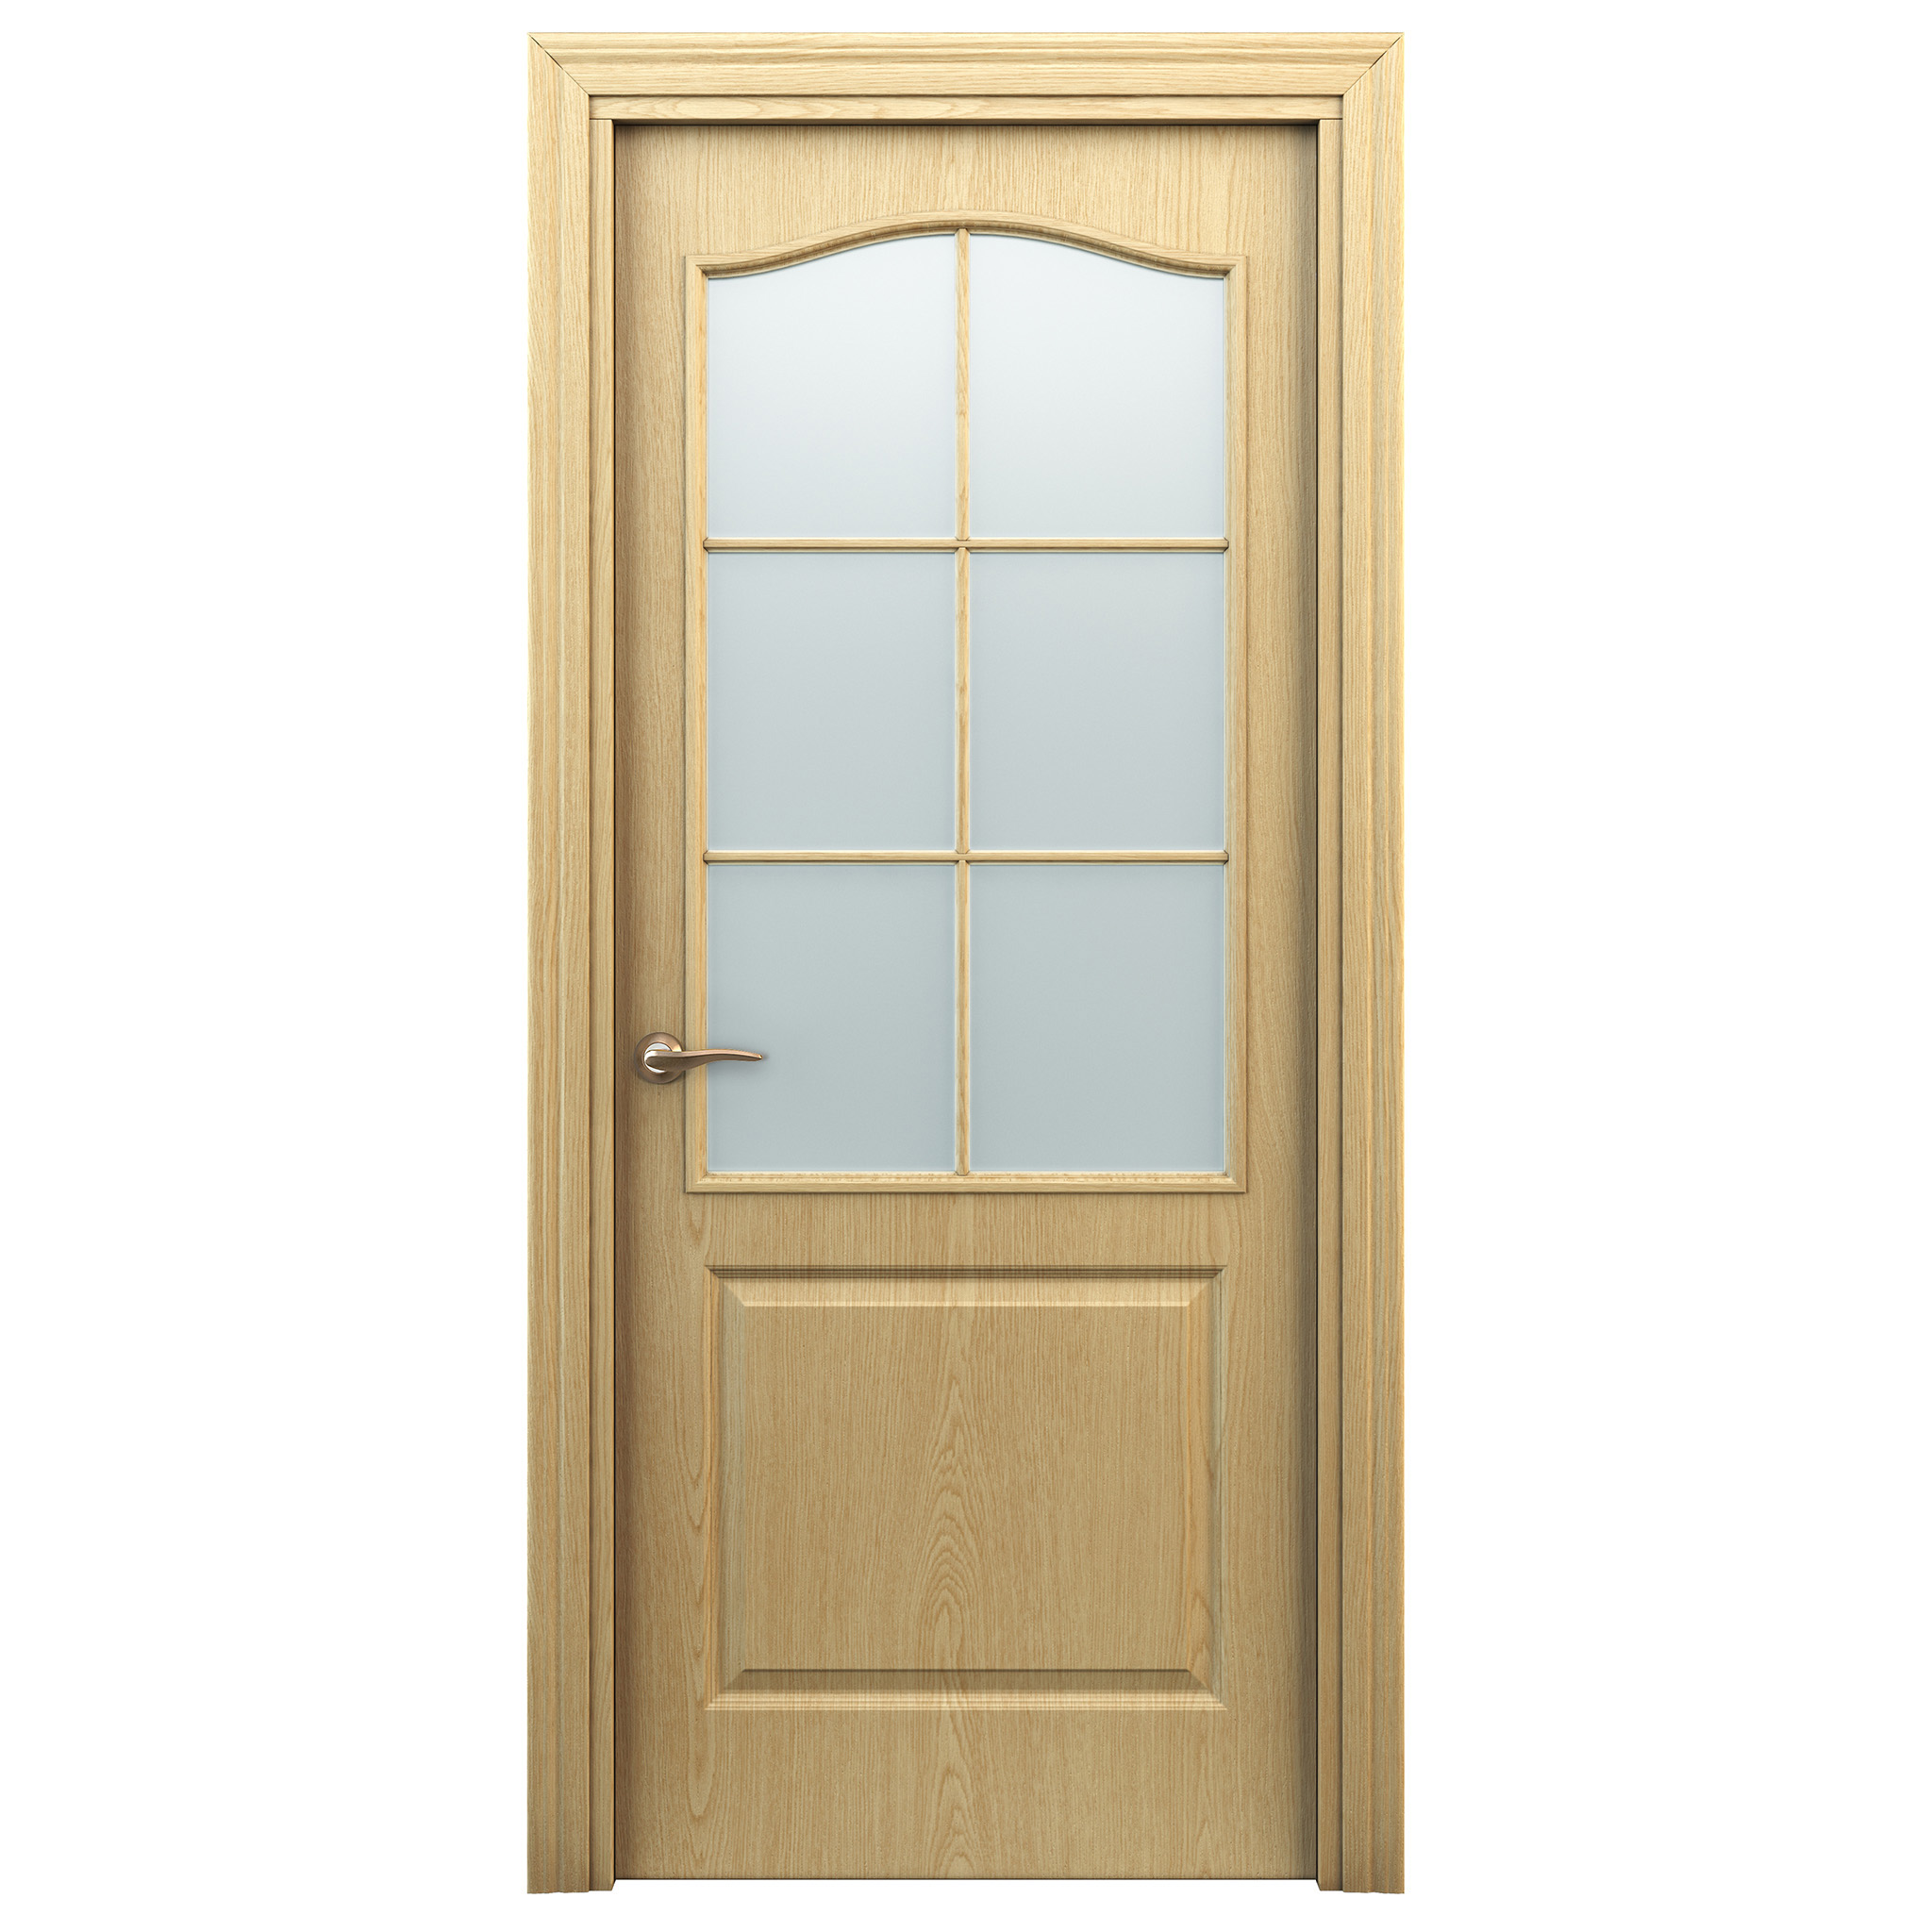 Леруа дверь со стеклом. Межкомнатная дверь "палитра 11-4", ПГ, белый. Межкомнатная дверь "палитра 11-4", ПГ, дуб Паллада. Межкомнатная дверь "палитра 11-4", ПГ, дуб светлый. Двери Браво м7 светлый лак.